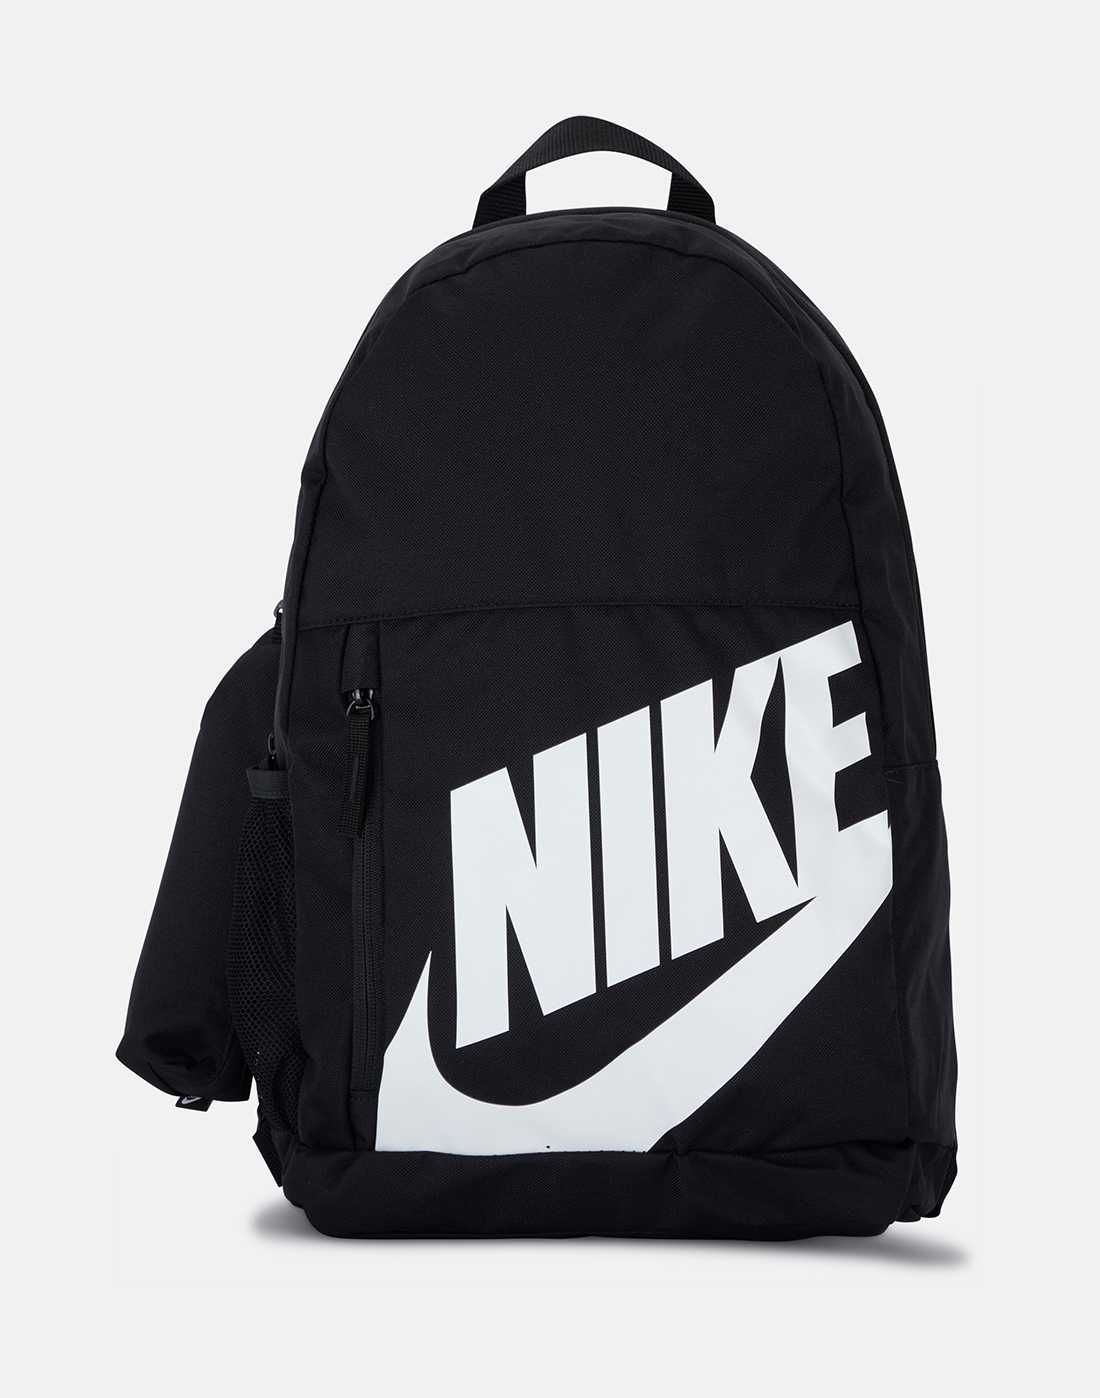 Nike Kids Elemental Backpack - Black | Life Style Sports EU